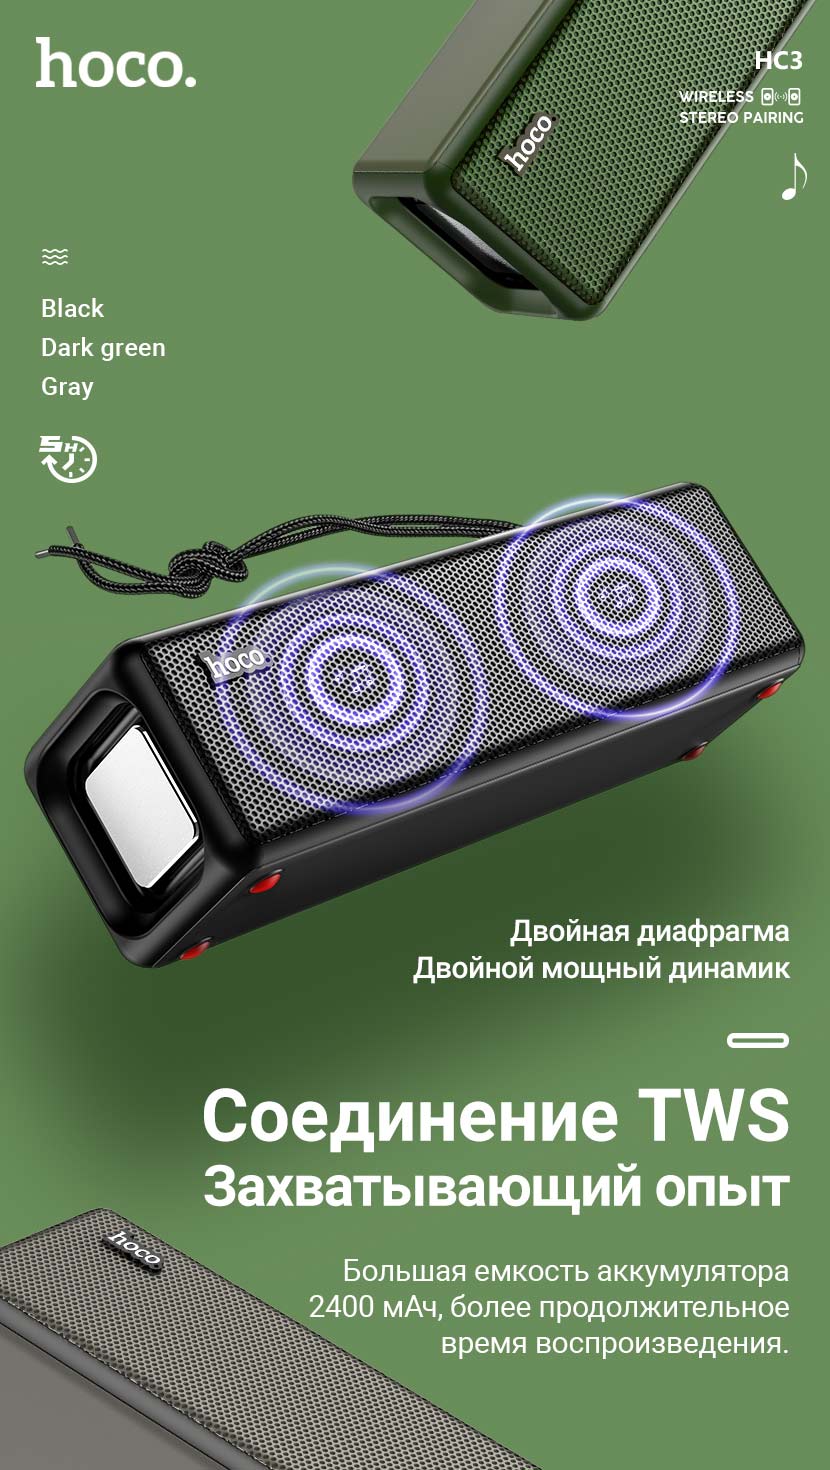 hoco news hc3 bounce sports wireless speaker tws ru